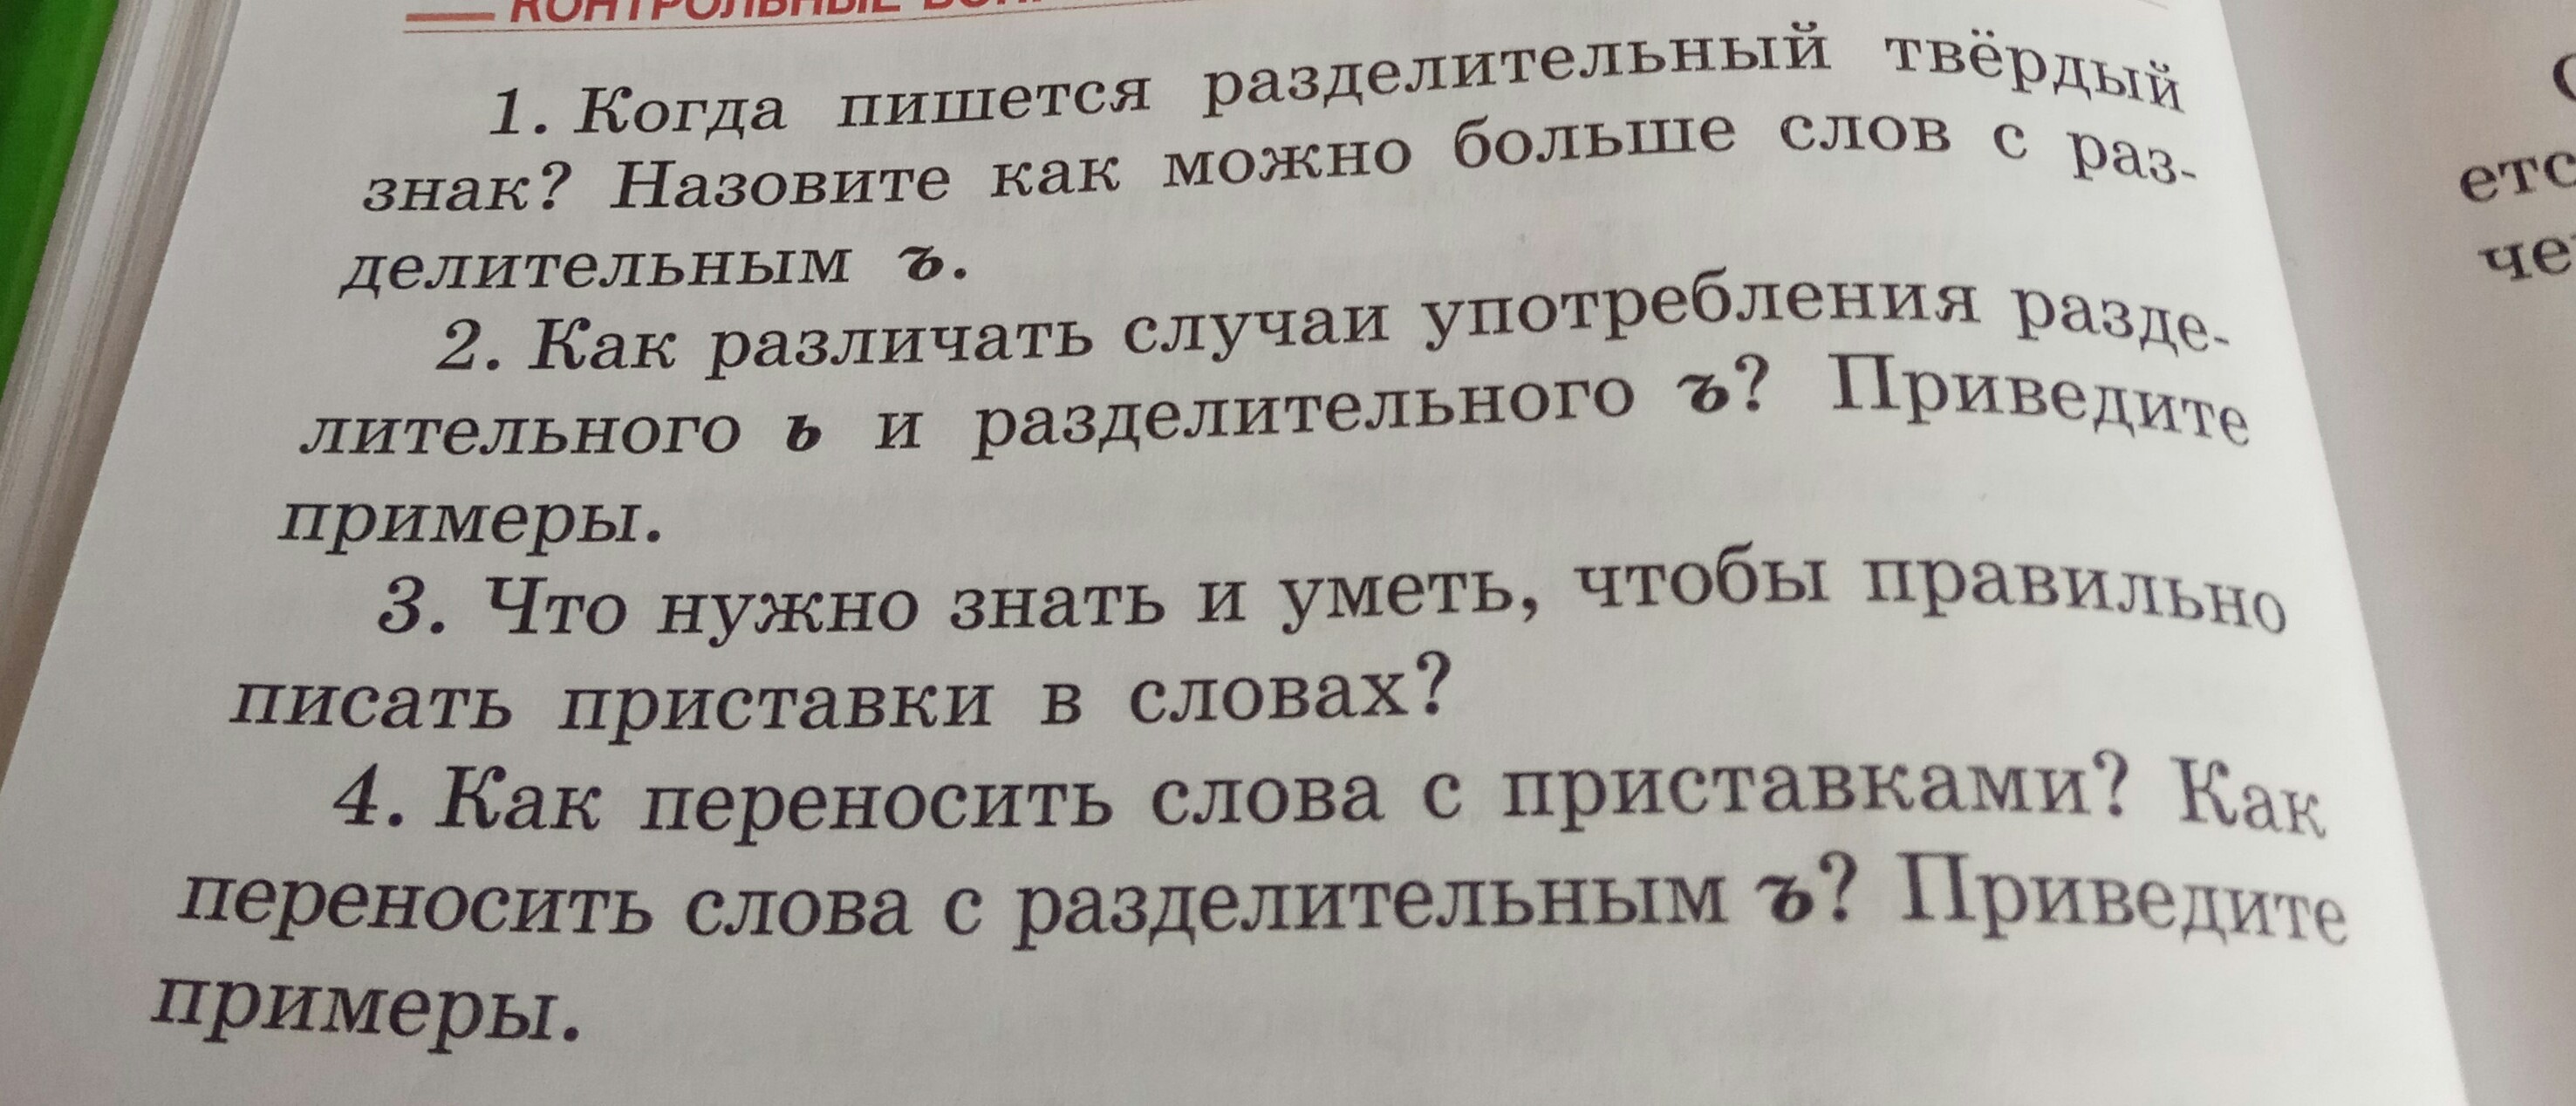 Русский язык страница 96 контрольные вопросы. Контрольные вопросы и задания.